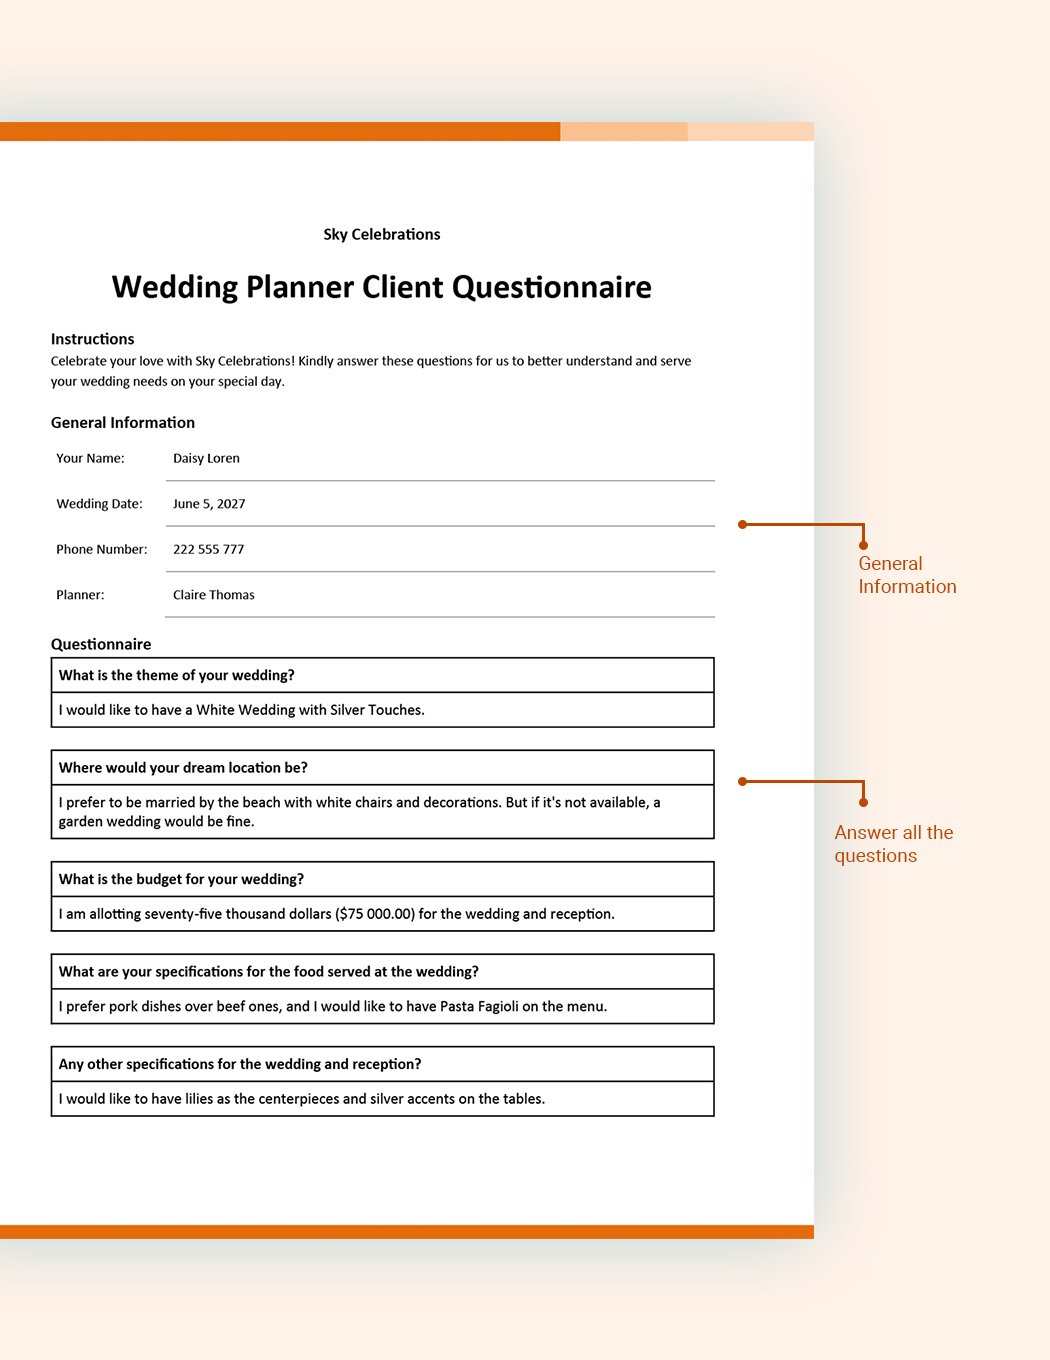 Wedding Planner Client Questionnaire